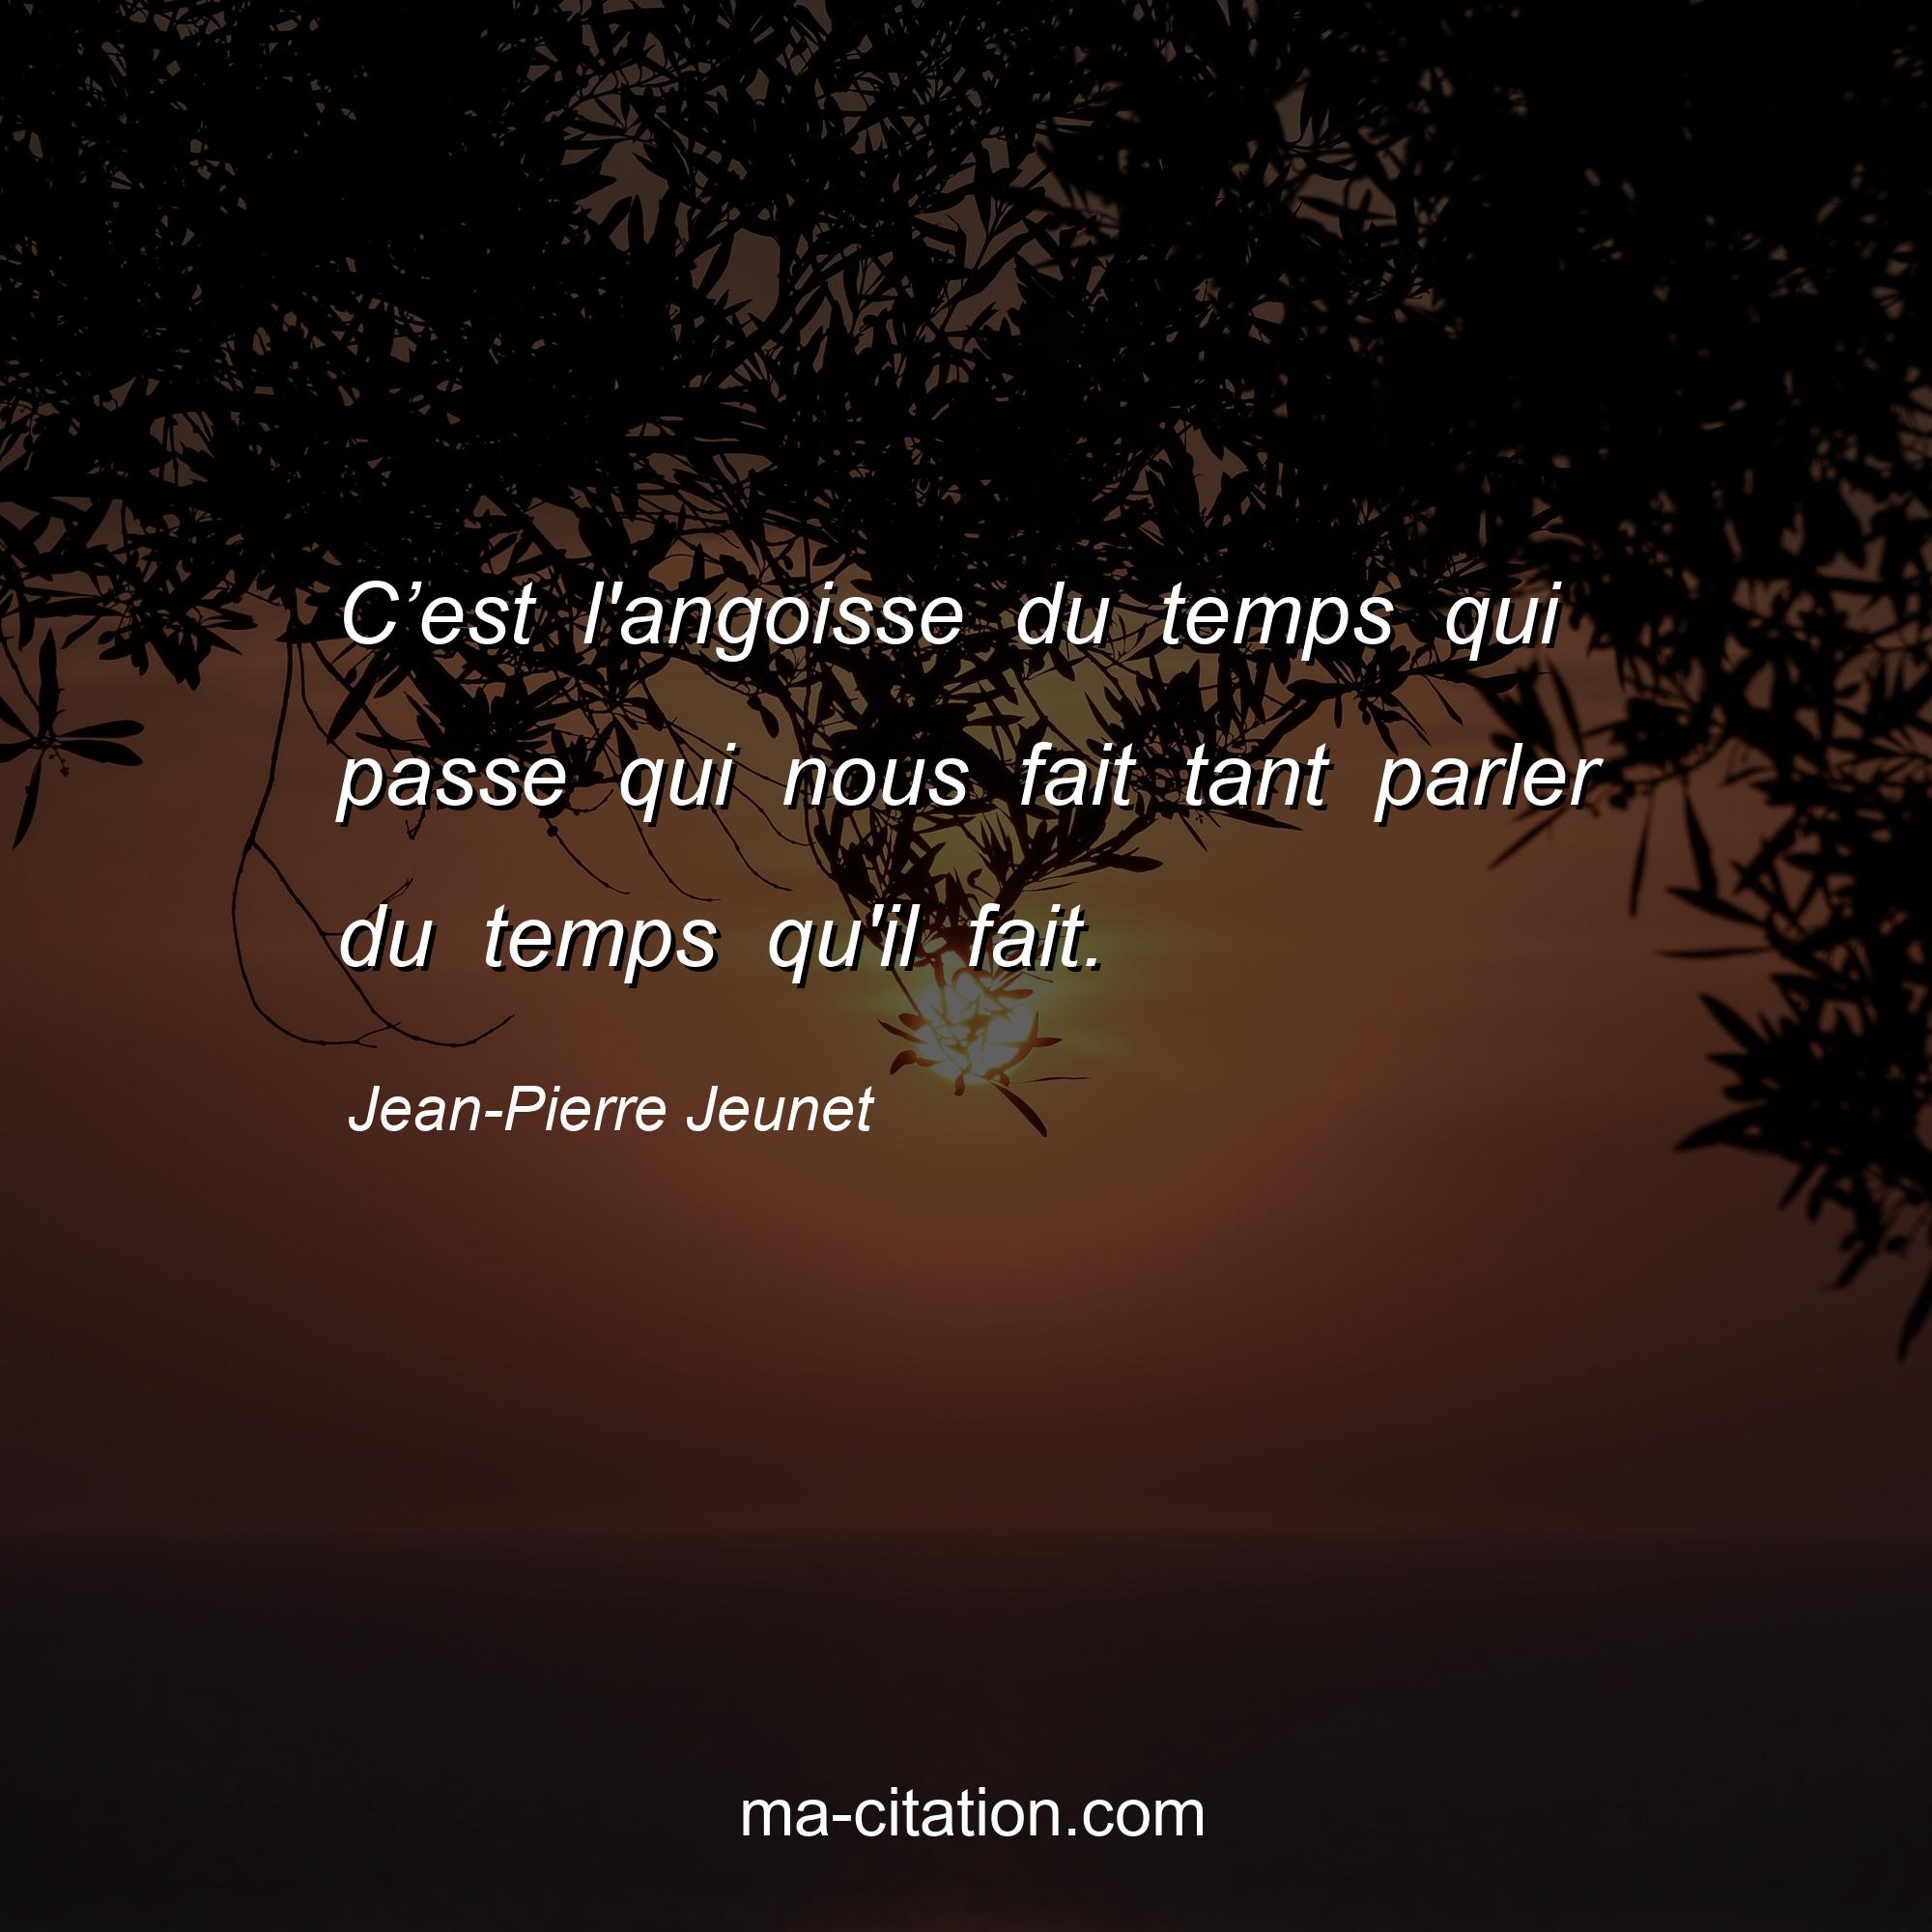 Jean-Pierre Jeunet : C’est l'angoisse du temps qui passe qui nous fait tant parler du temps qu'il fait.